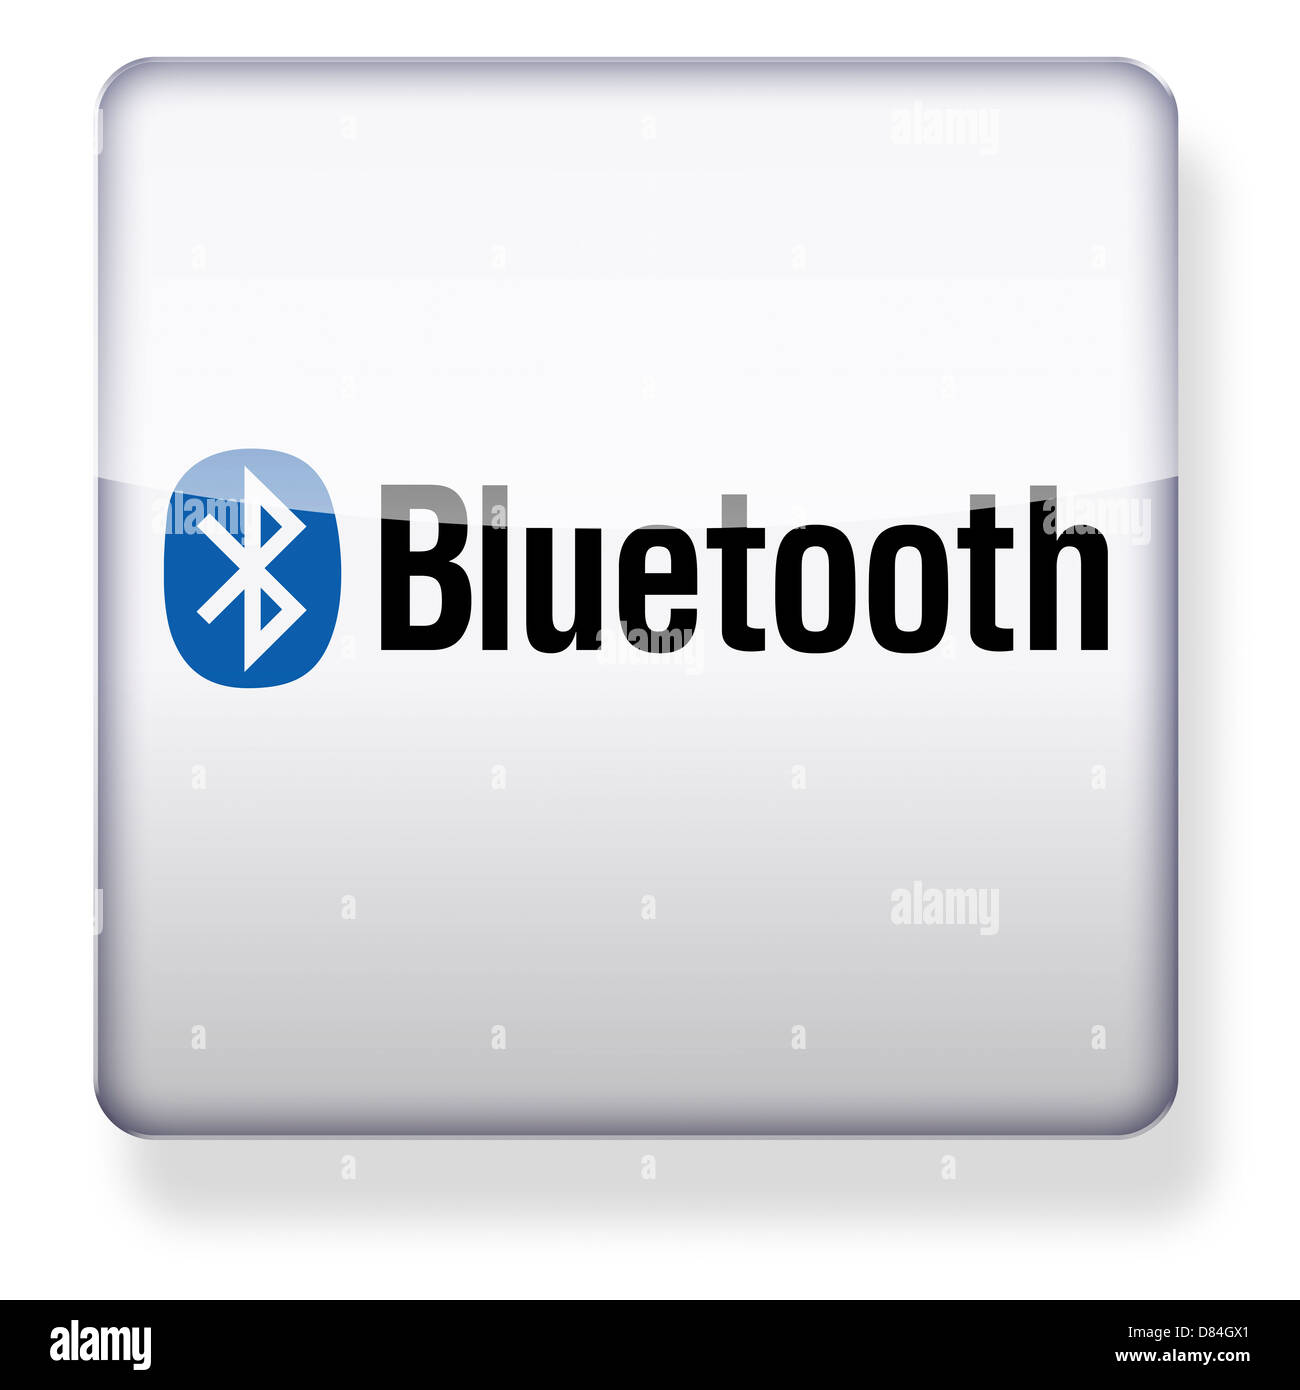 Bluetooth logo Banque d'images détourées - Alamy